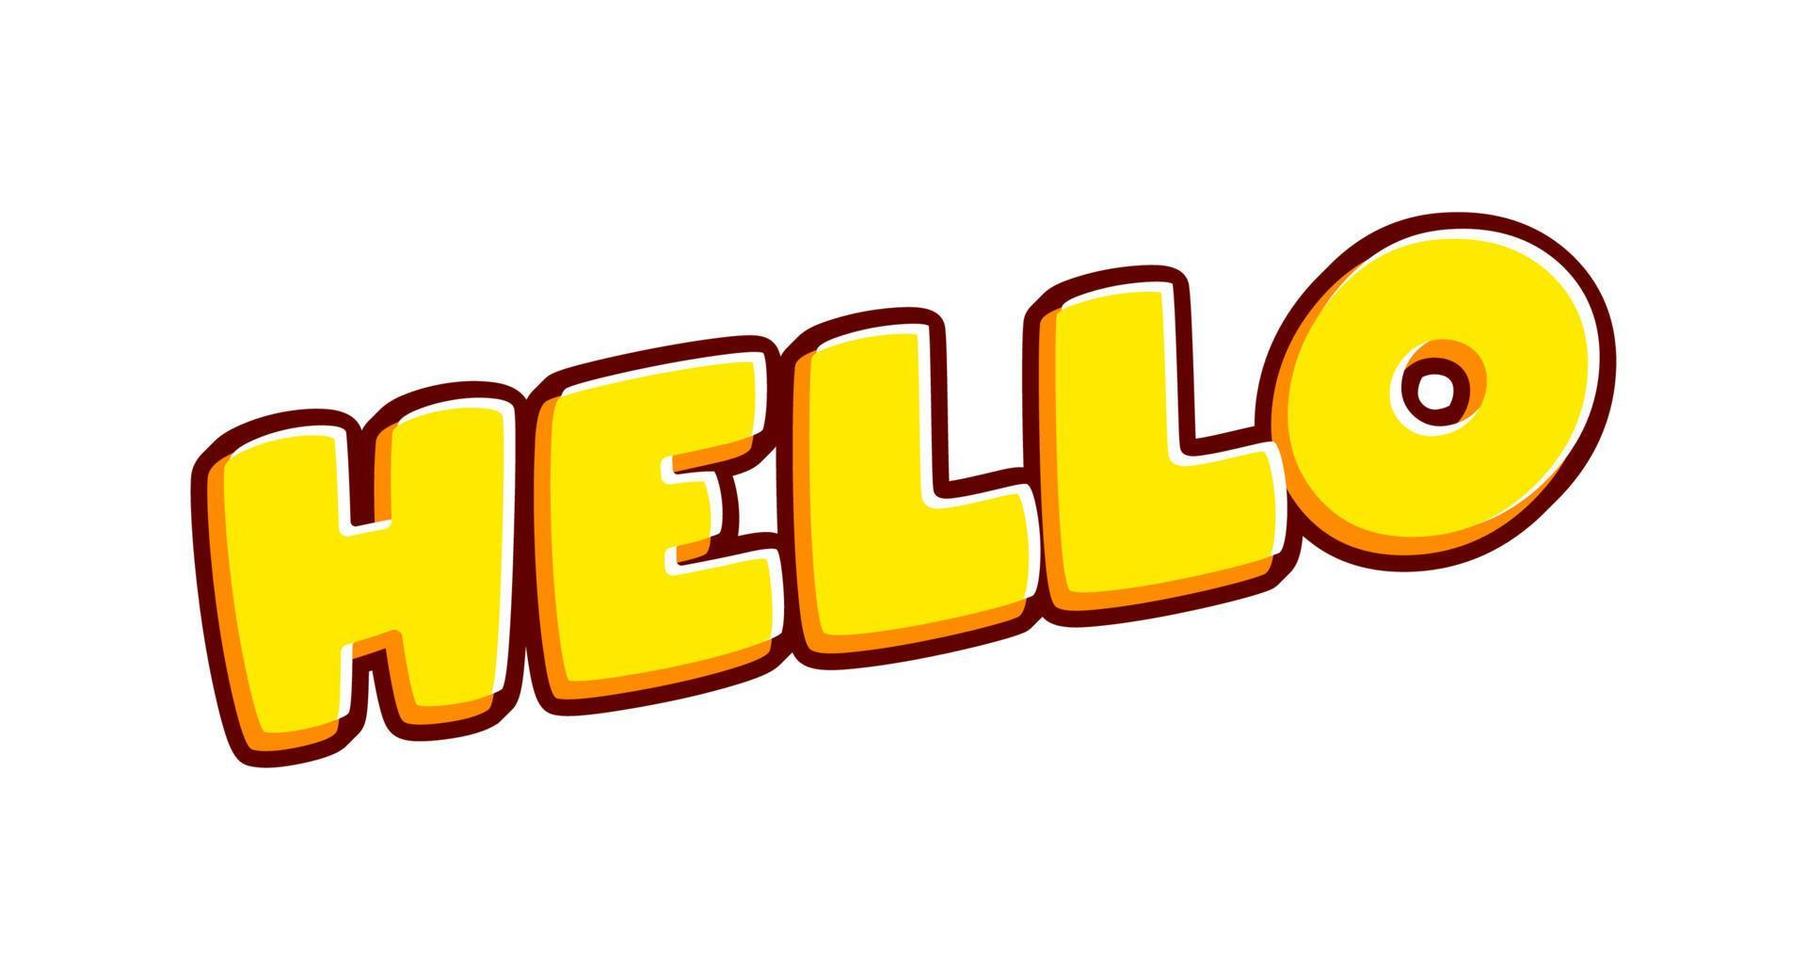 Hola. Letras de frase de saludo aisladas en vector de diseño de efecto de texto colorido blanco. texto o inscripciones en inglés. el diseño moderno y creativo tiene colores rojo, naranja, amarillo.